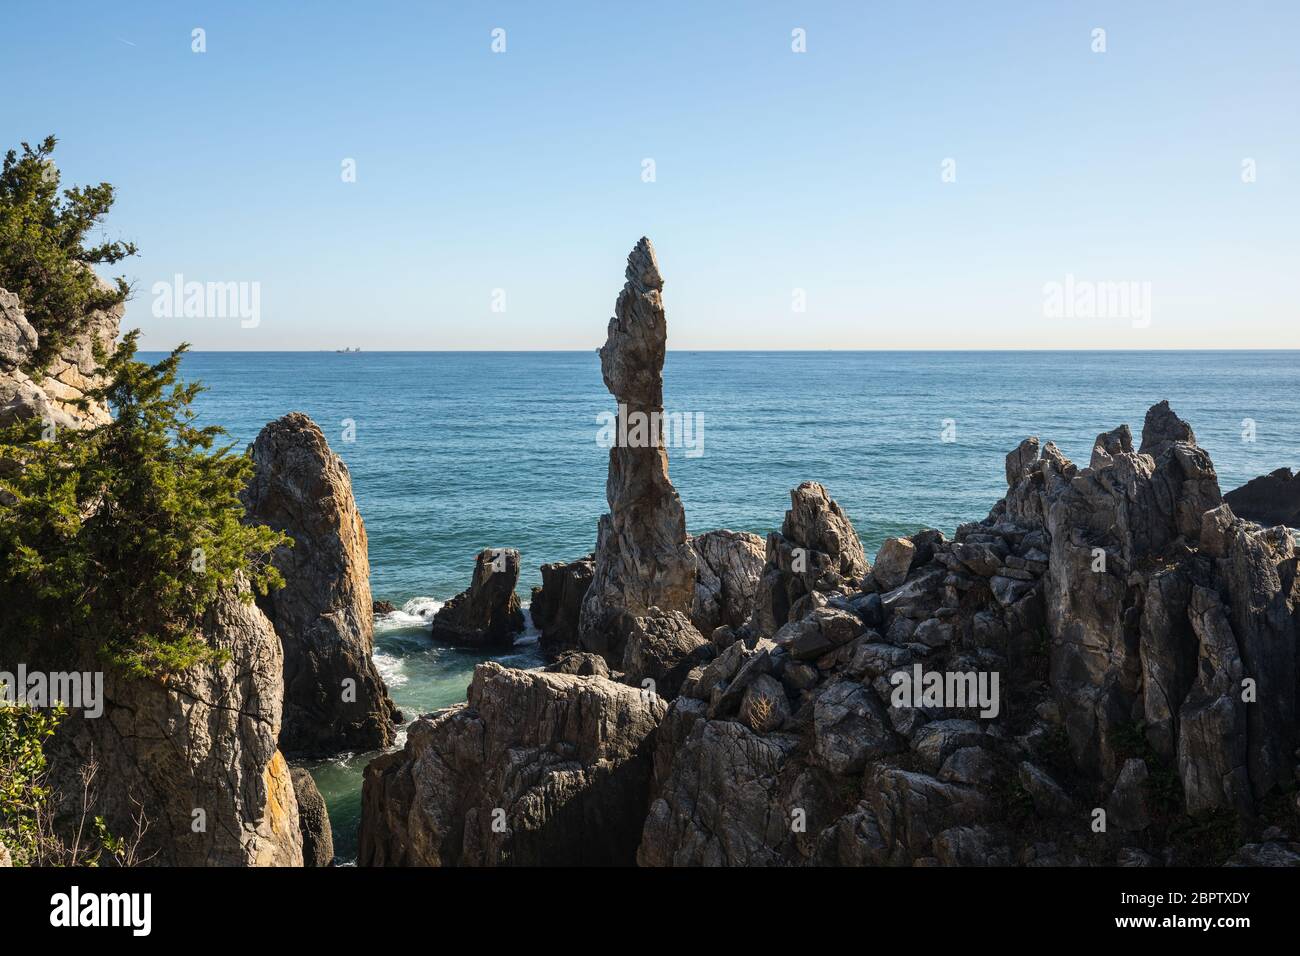 Paysage de mer avec de magnifiques rochers naturels. Gangwon-do de la mer de l'est, Corée Banque D'Images